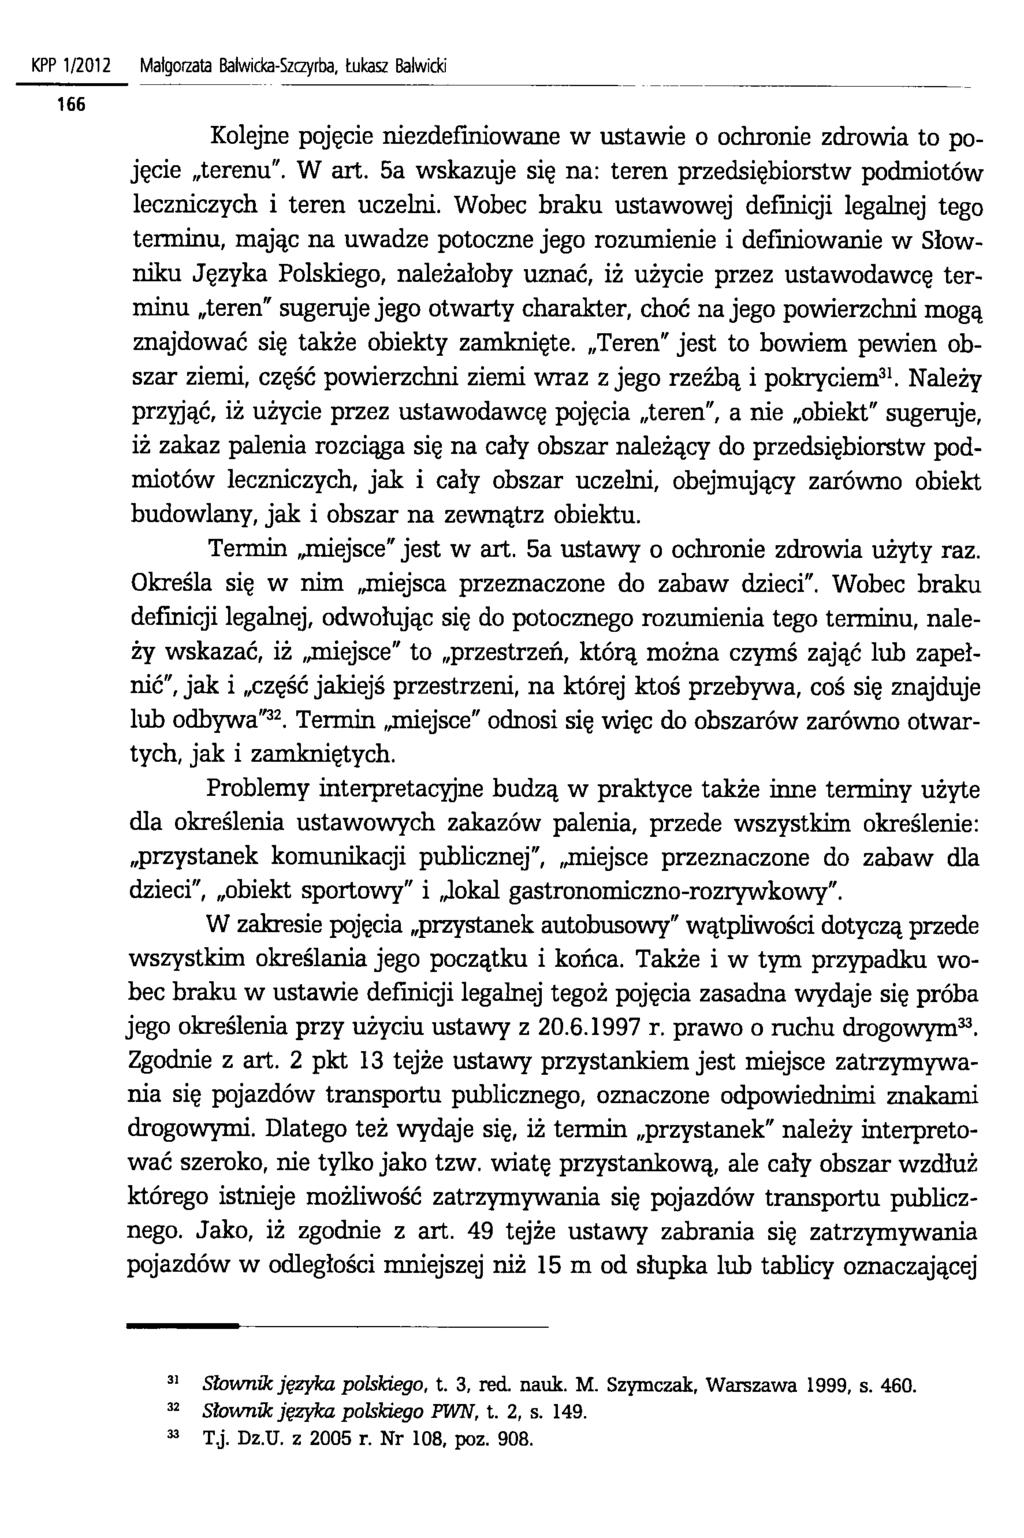 KPP 1/2012 Matgoizata Balwicka-Szczyrba, tukasz Balwicki Kolejne pojęcie niezdefiniowane w ustawie o ochronie zdrowia to pojęcie terenu". W art.